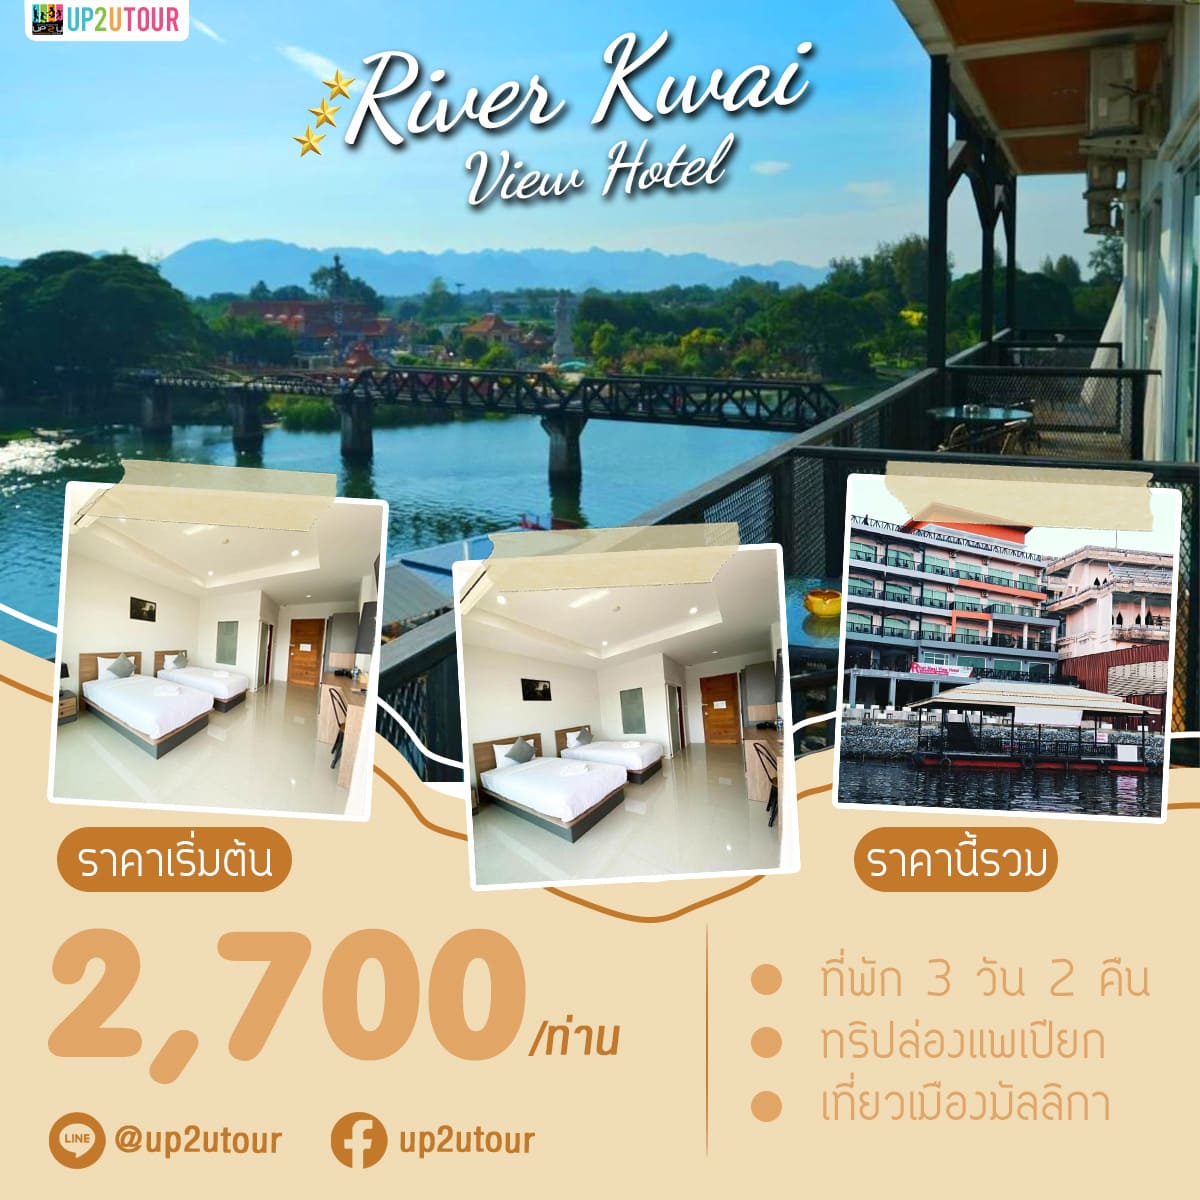 Rive Kwai Vie Hotel กาญจนบุรี ราคาเริ่มต้นที่ 2,700 บาท/ท่าน